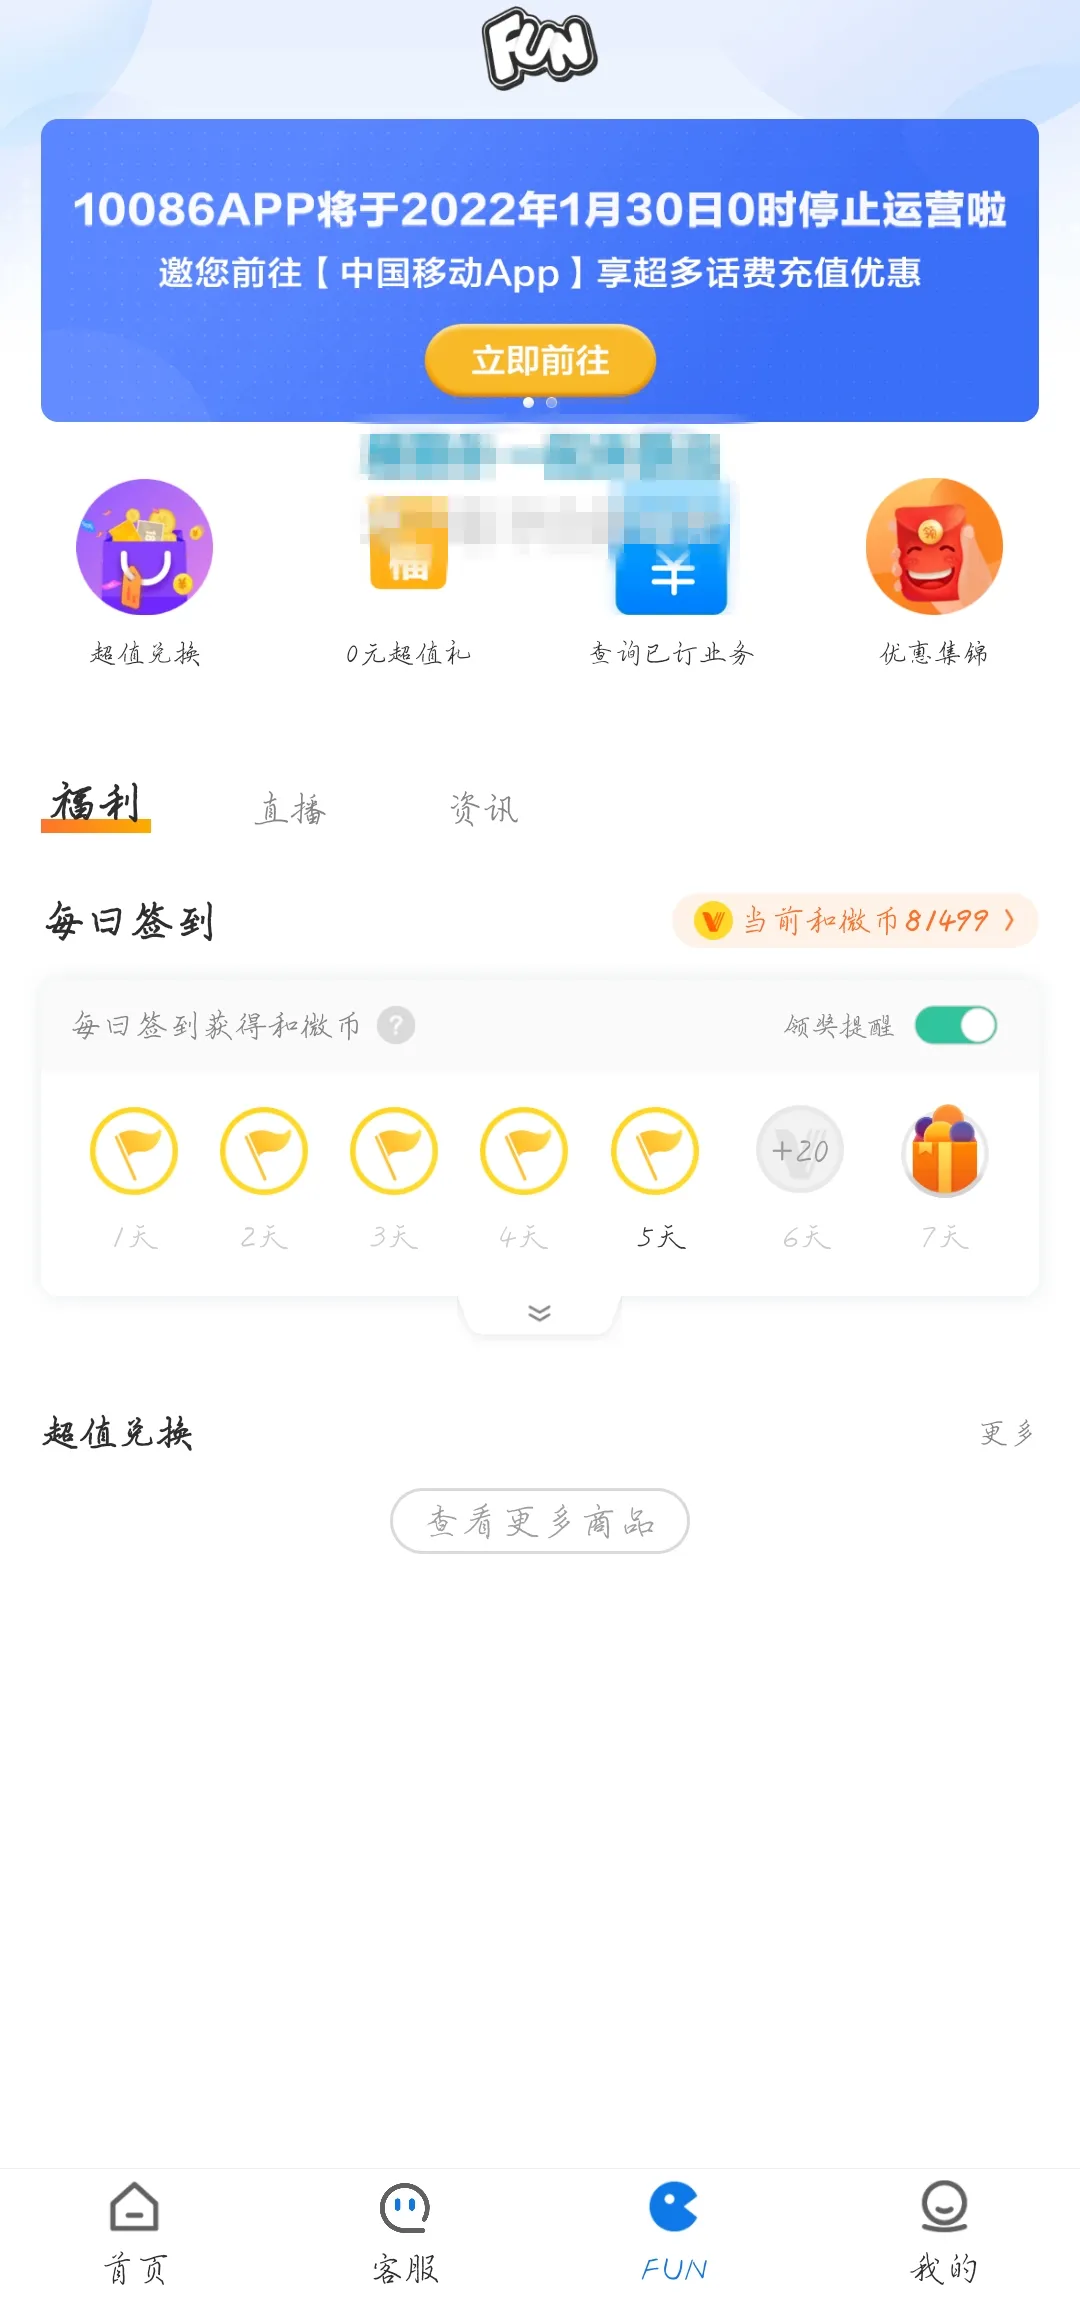 中国移动将于 1 月 30 日停止运营 10086 App